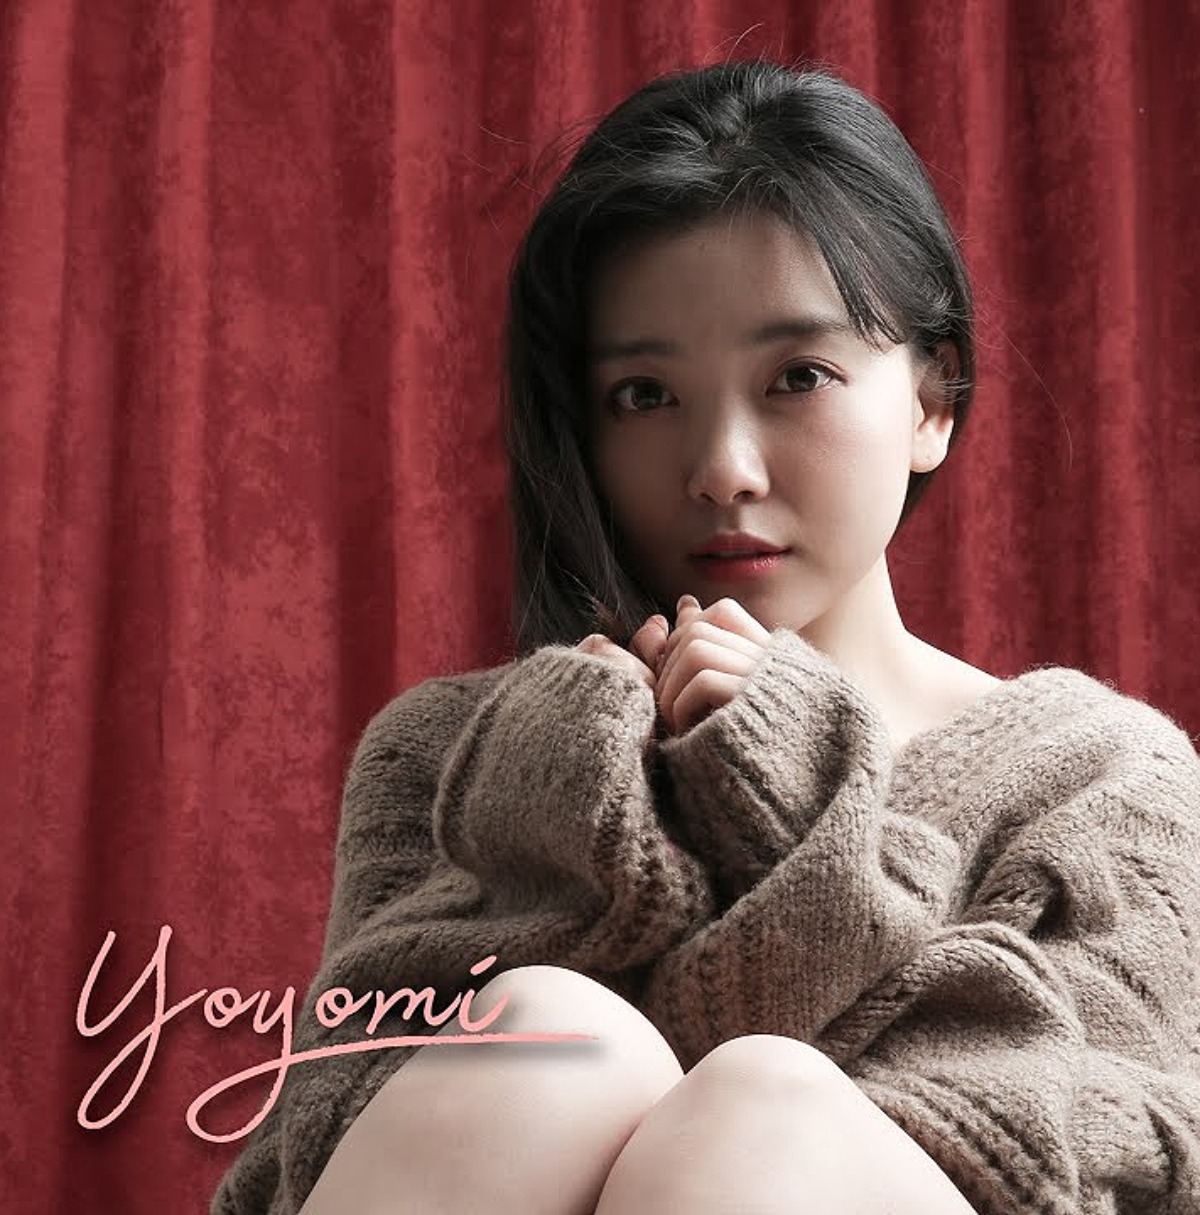 A cantora Yoyomi